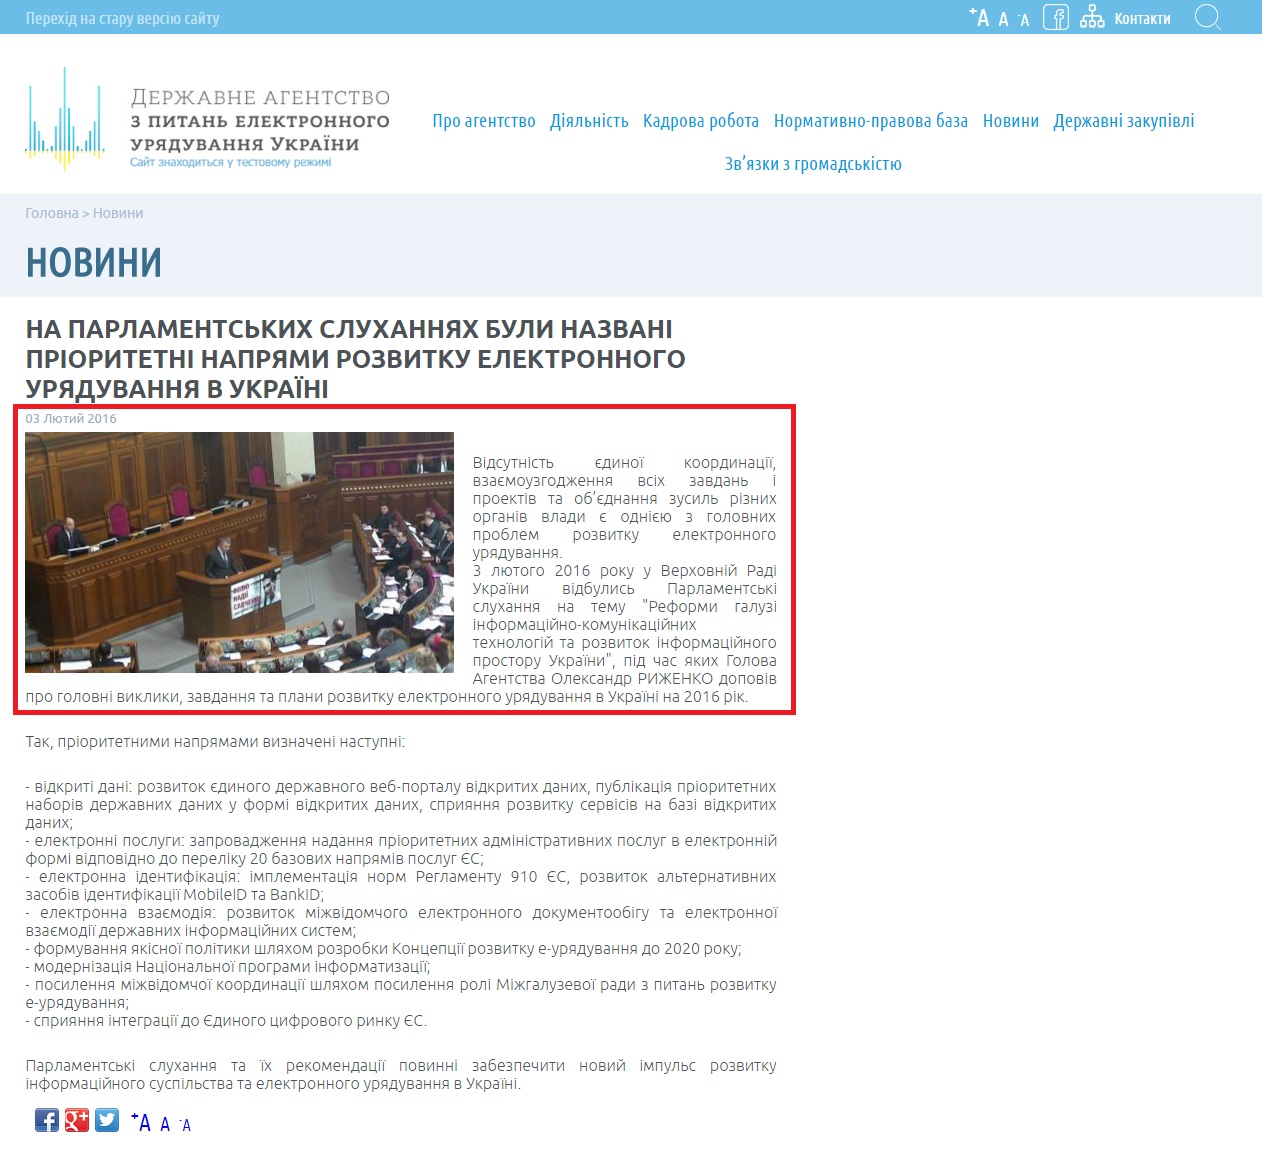 http://e.gov.ua/content/priorytetni-napryamy-rozvytku-elektronnogo-uryaduvannya-v-ukrayini